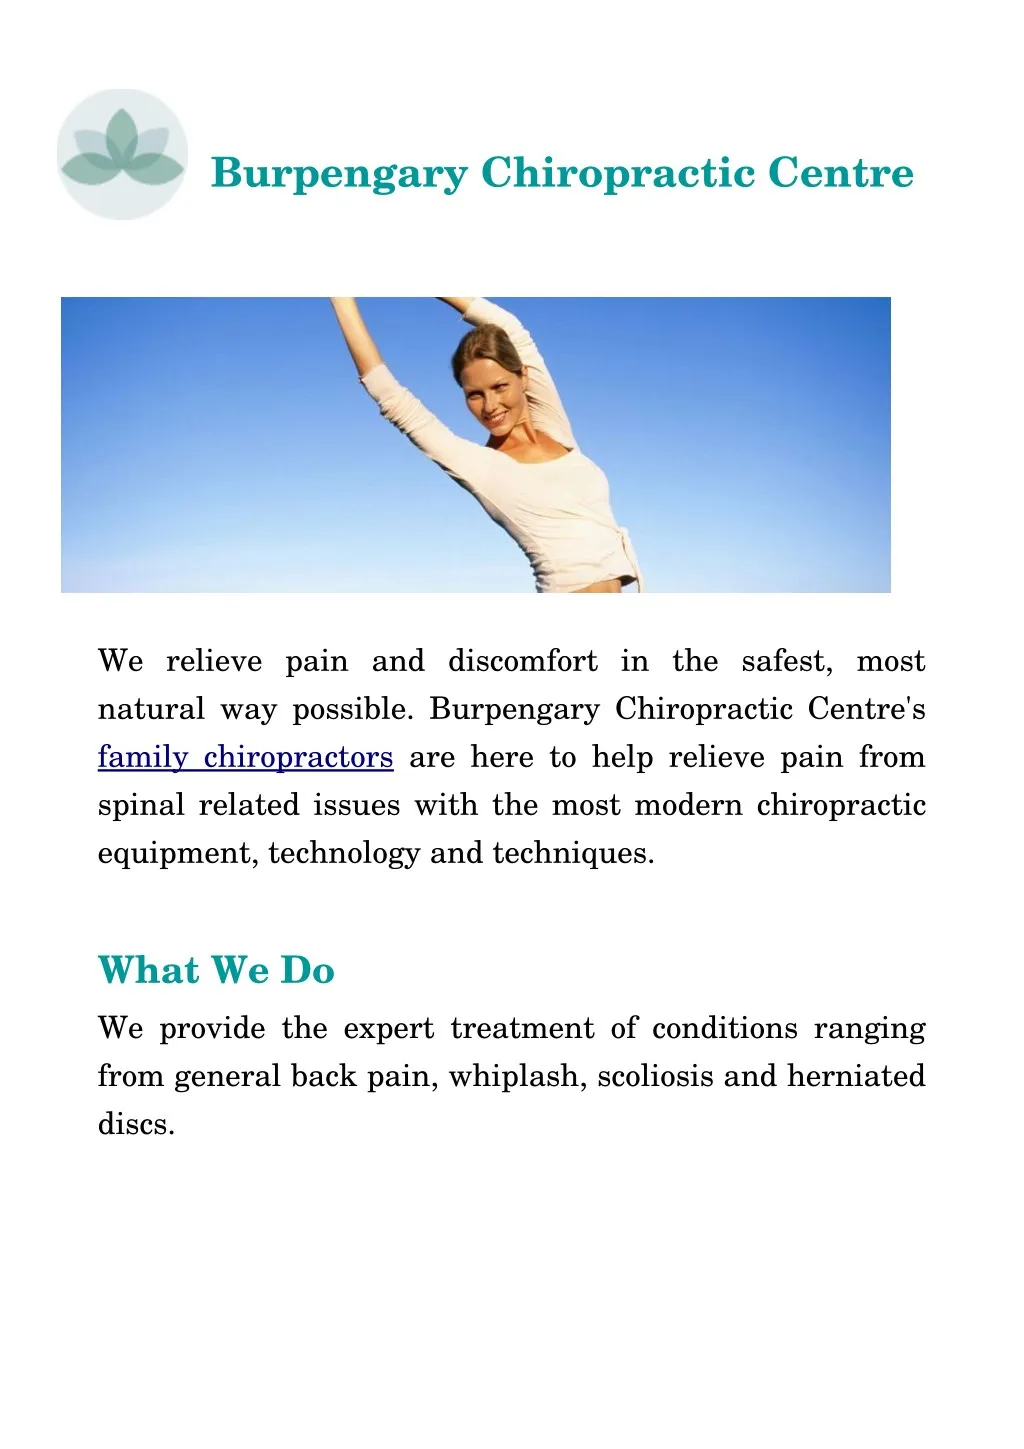 burpengary chiropractic centre